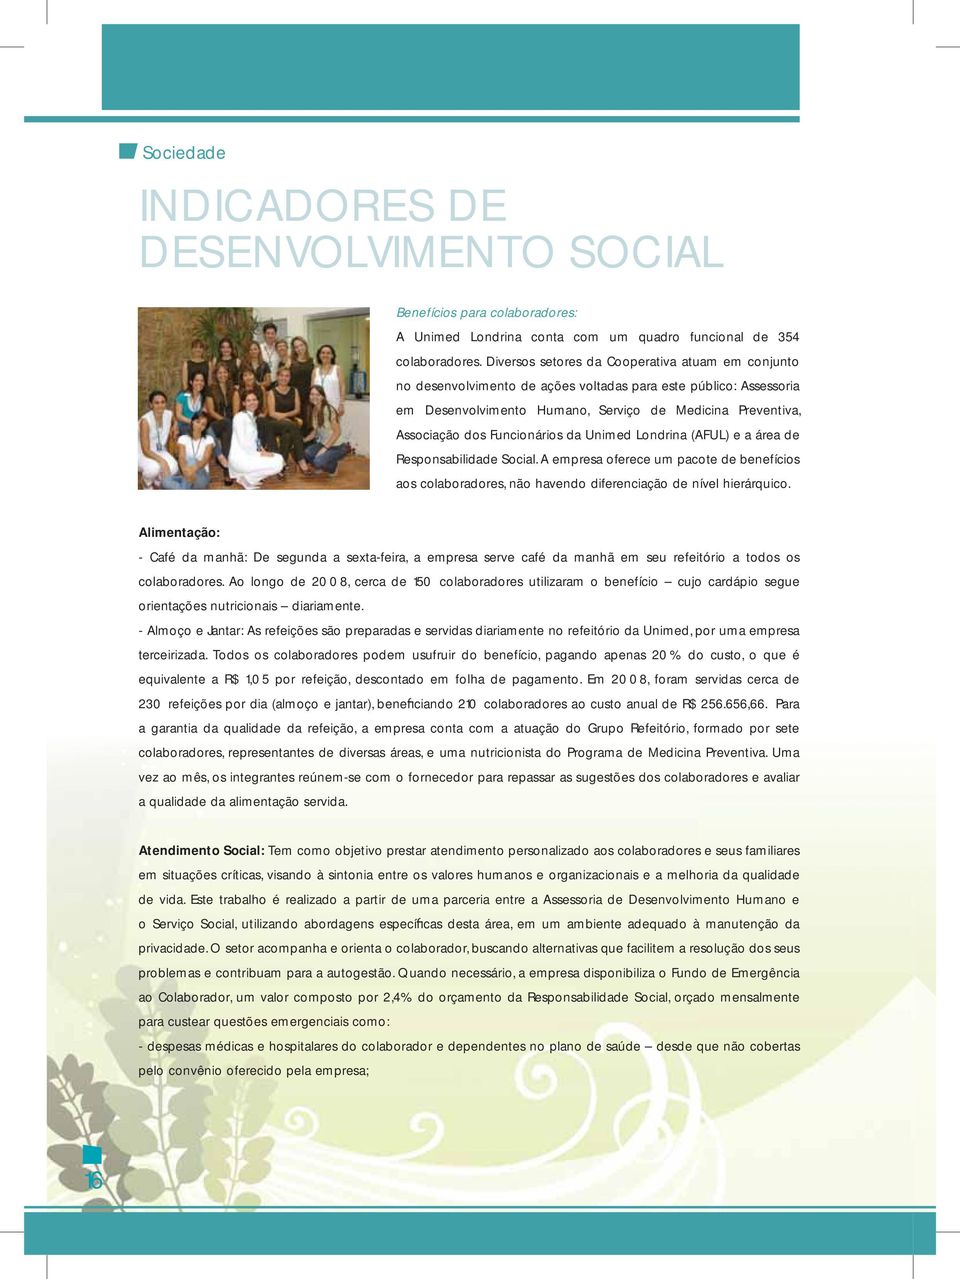 Funcionários da Unimed Londrina (AFUL) e a área de Responsabilidade Social. A empresa oferece um pacote de benefícios aos colaboradores, não havendo diferenciação de nível hierárquico.